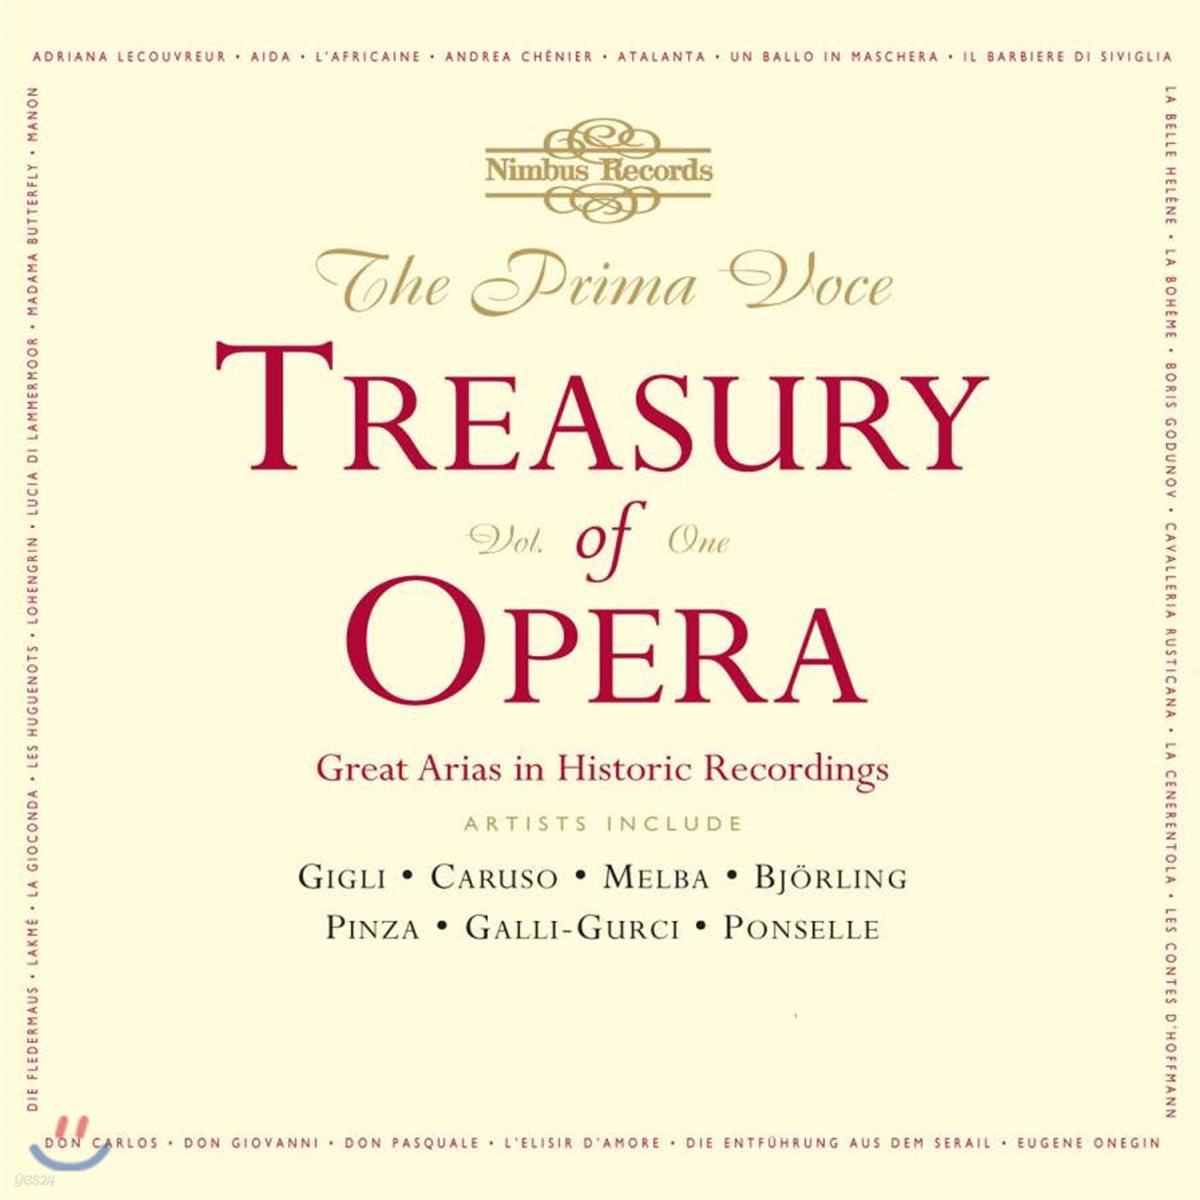 오페라 아리아 명연주 1집 (The Prima Voce Treasury of Opera, Volume 1 - Great Arias in Historic Recordings)